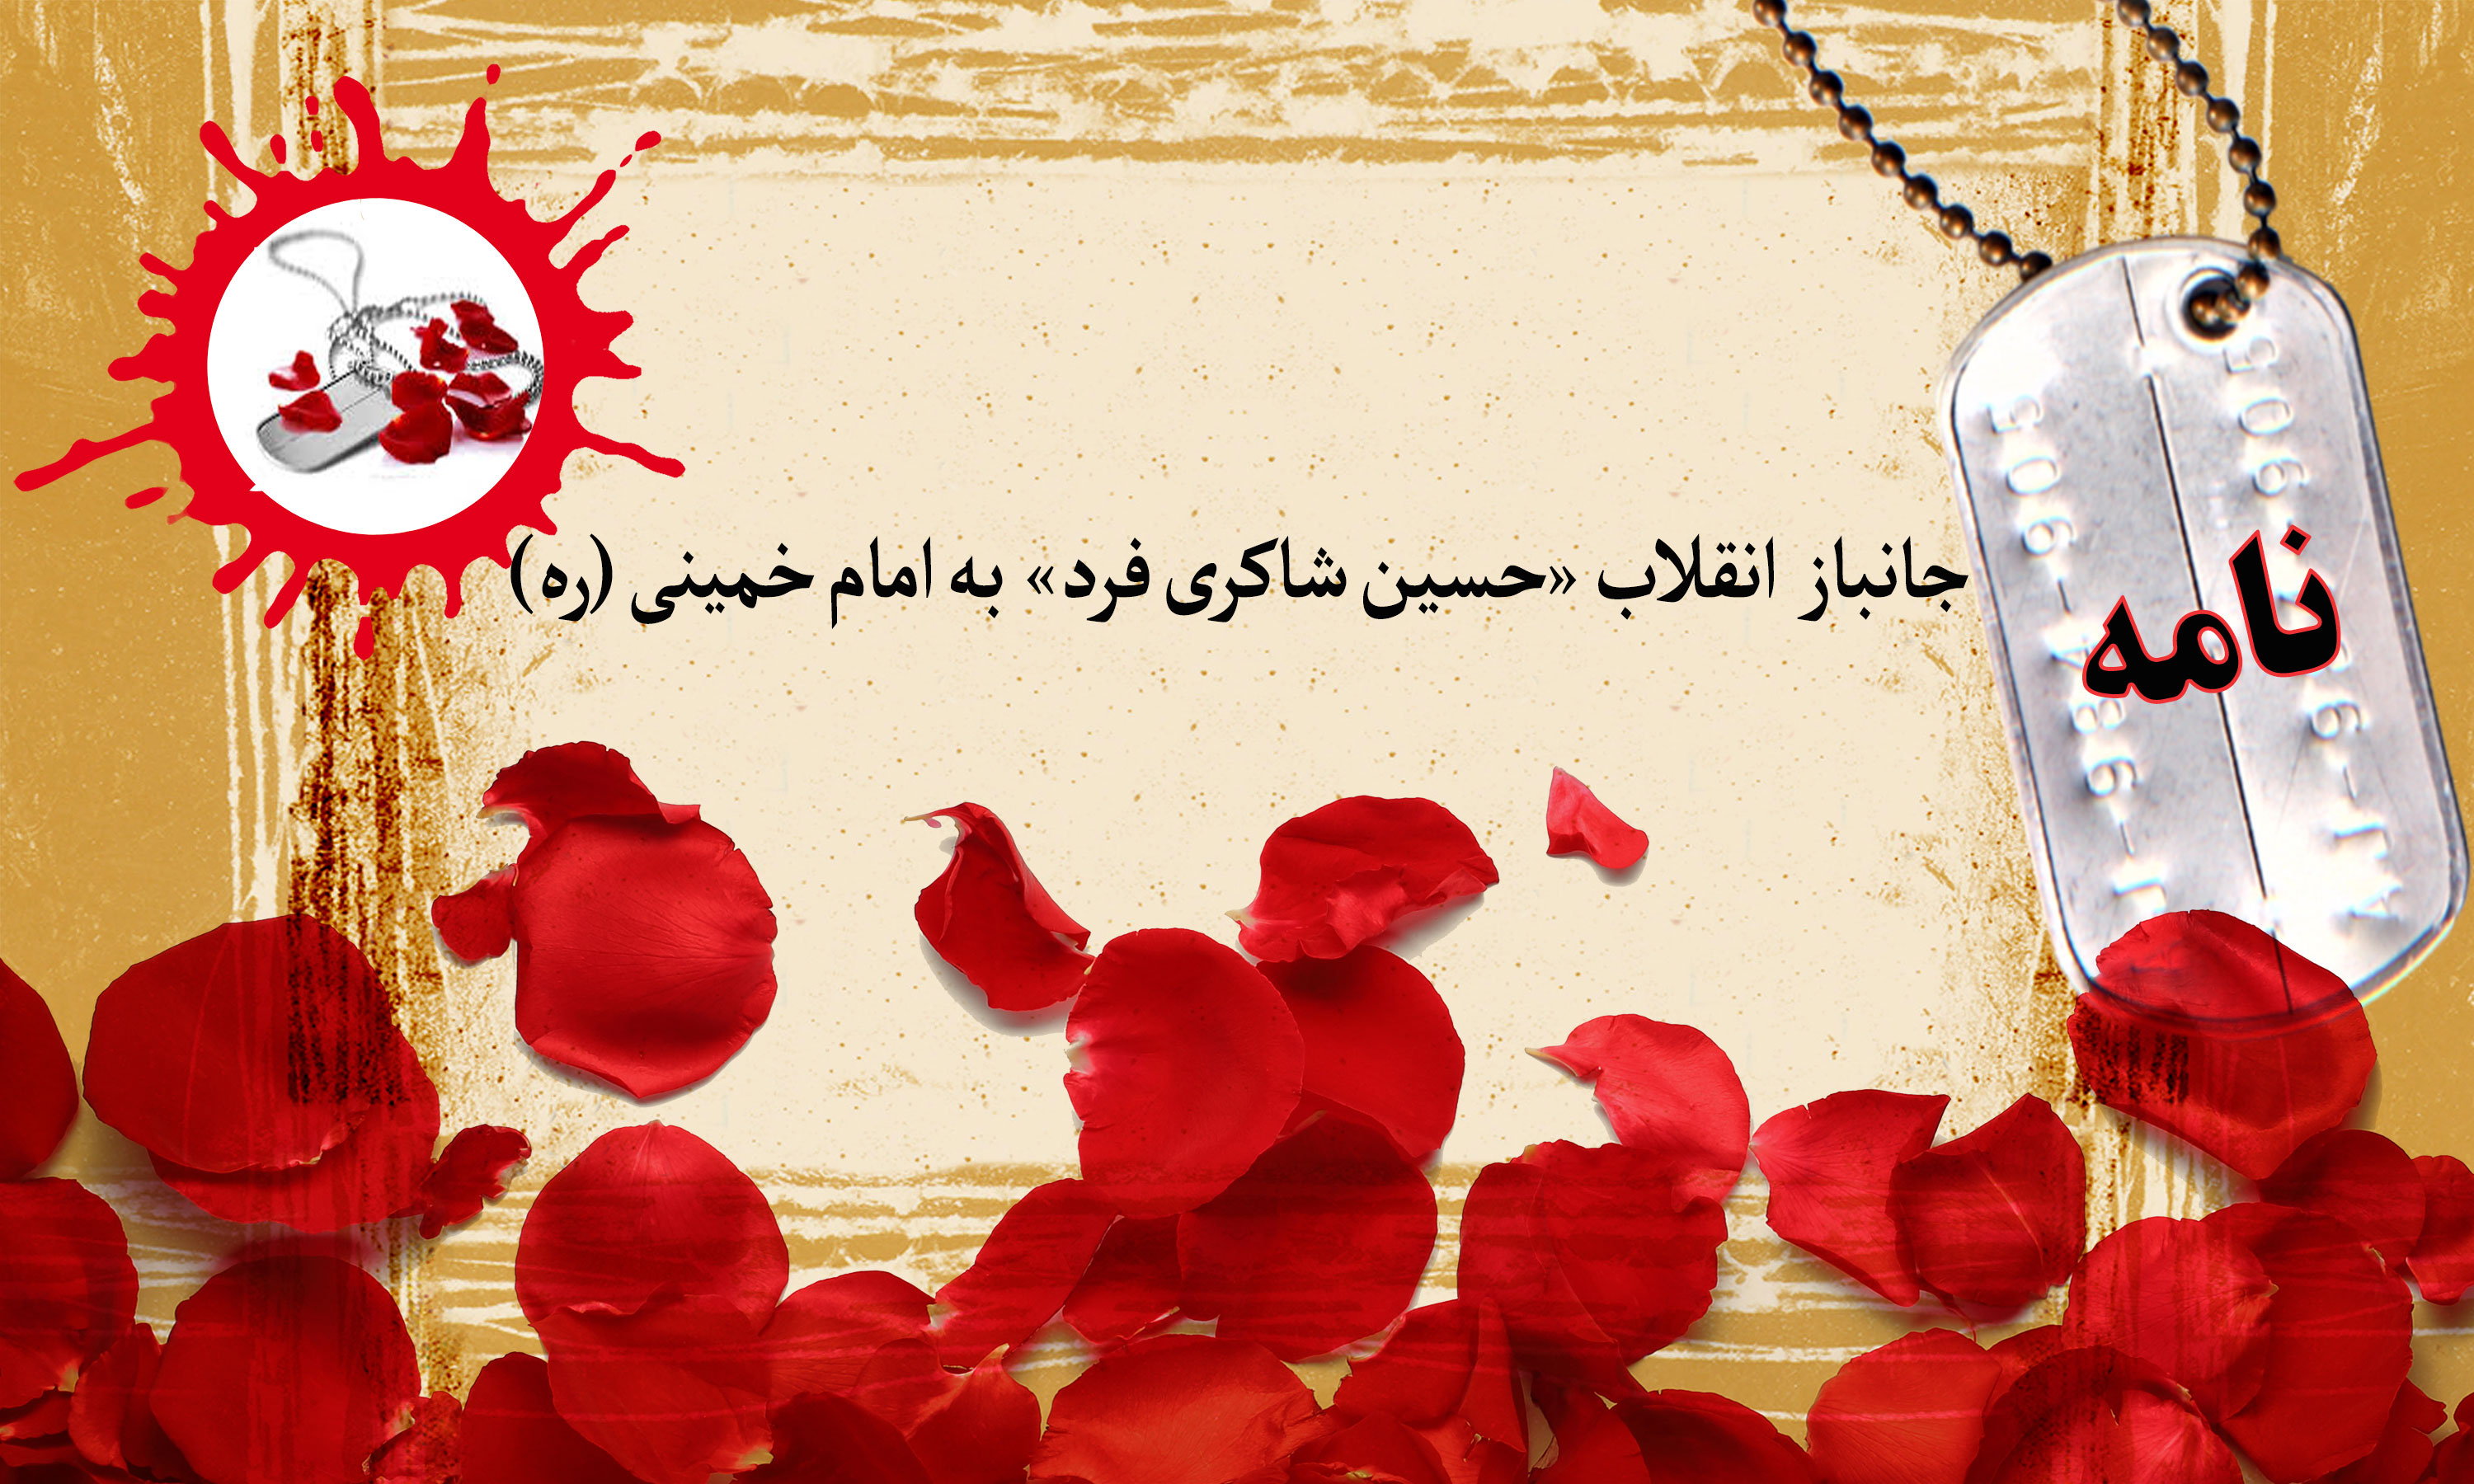 نامه جانباز انقلاب به امام خمینی (ره)/ روزی خون ما گواه پیروزی اسلام خواهد بود